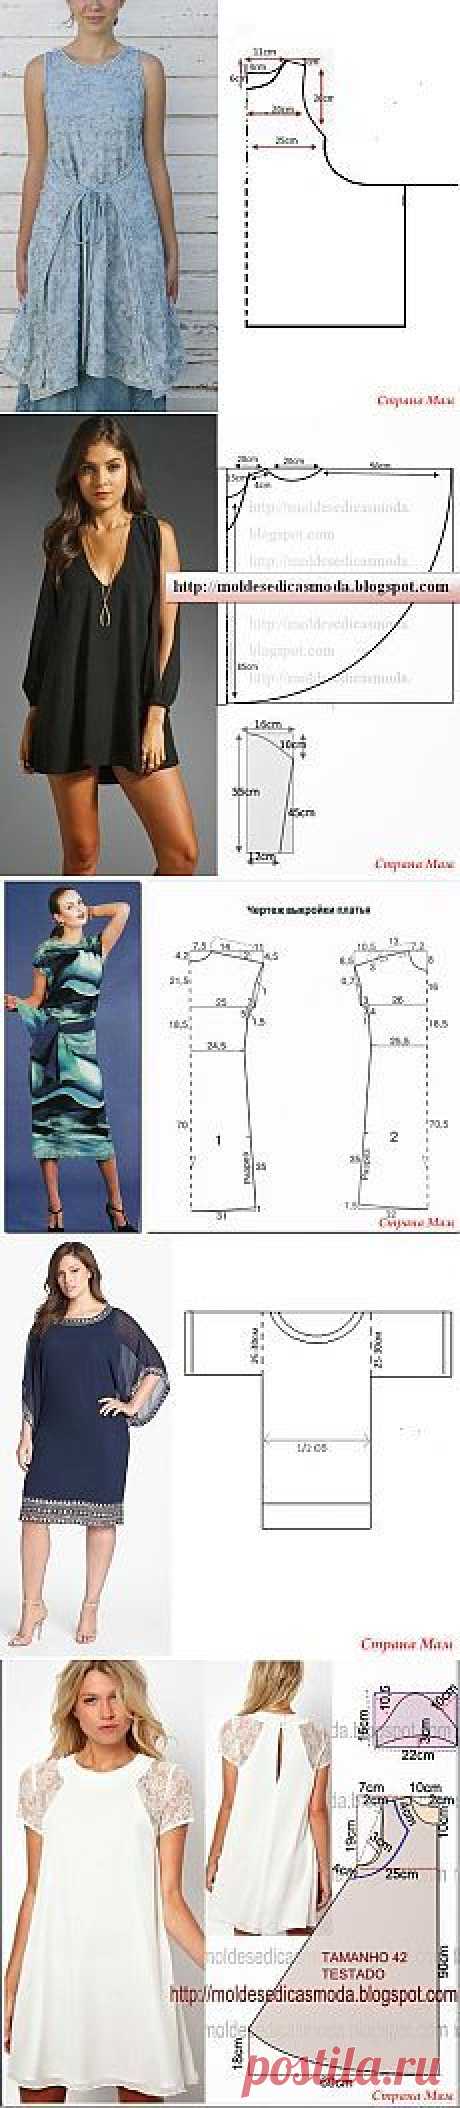 Patrones interesantes y patrones simples - 3 (túnicas y vestidos) - Costura - Mujer Mundo | patrones